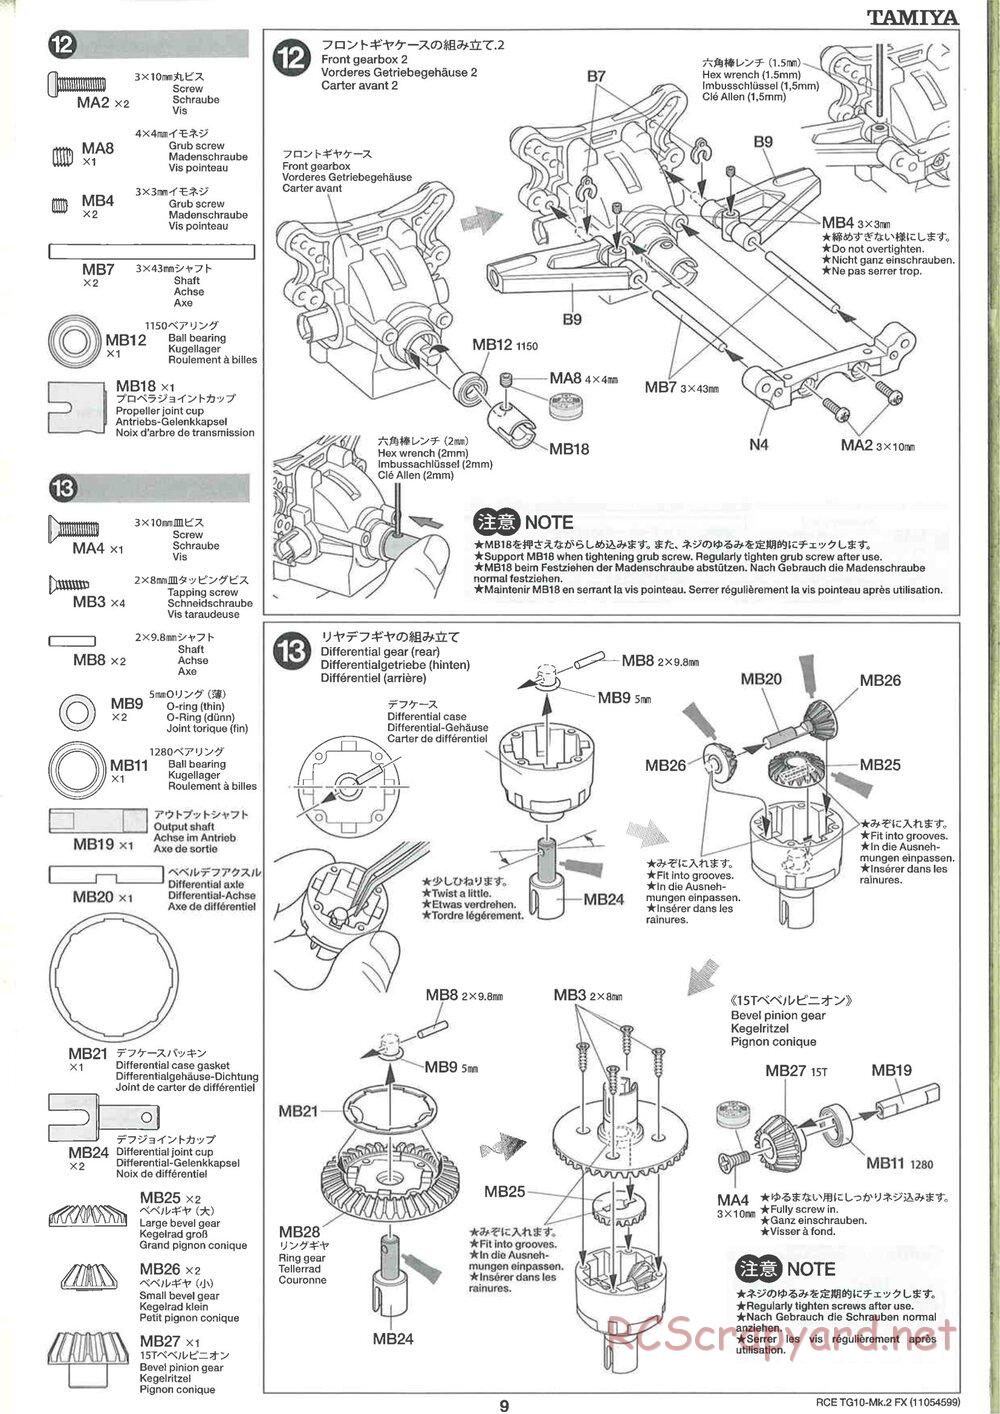 Tamiya - TG10 Mk.2 FX Chassis - Manual - Page 9